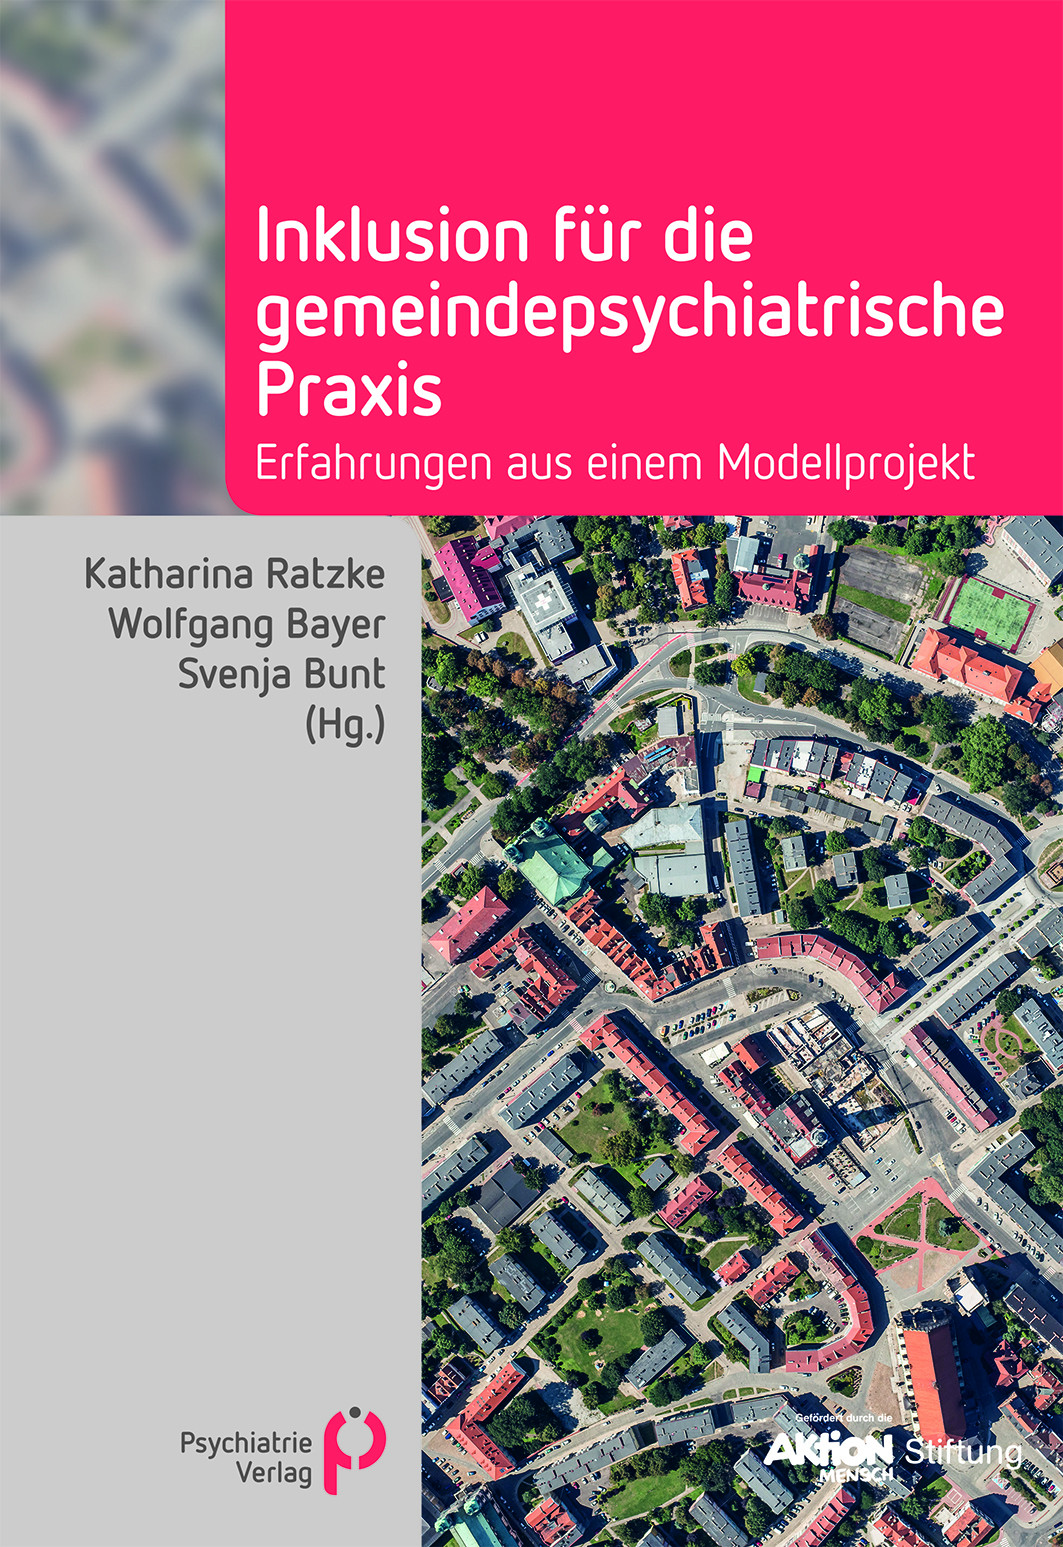 Buchcover "Inklusion für die gemeindepsychiatrische Praxis" von Svenja Bunt u.a. Psychiatrie Verlag